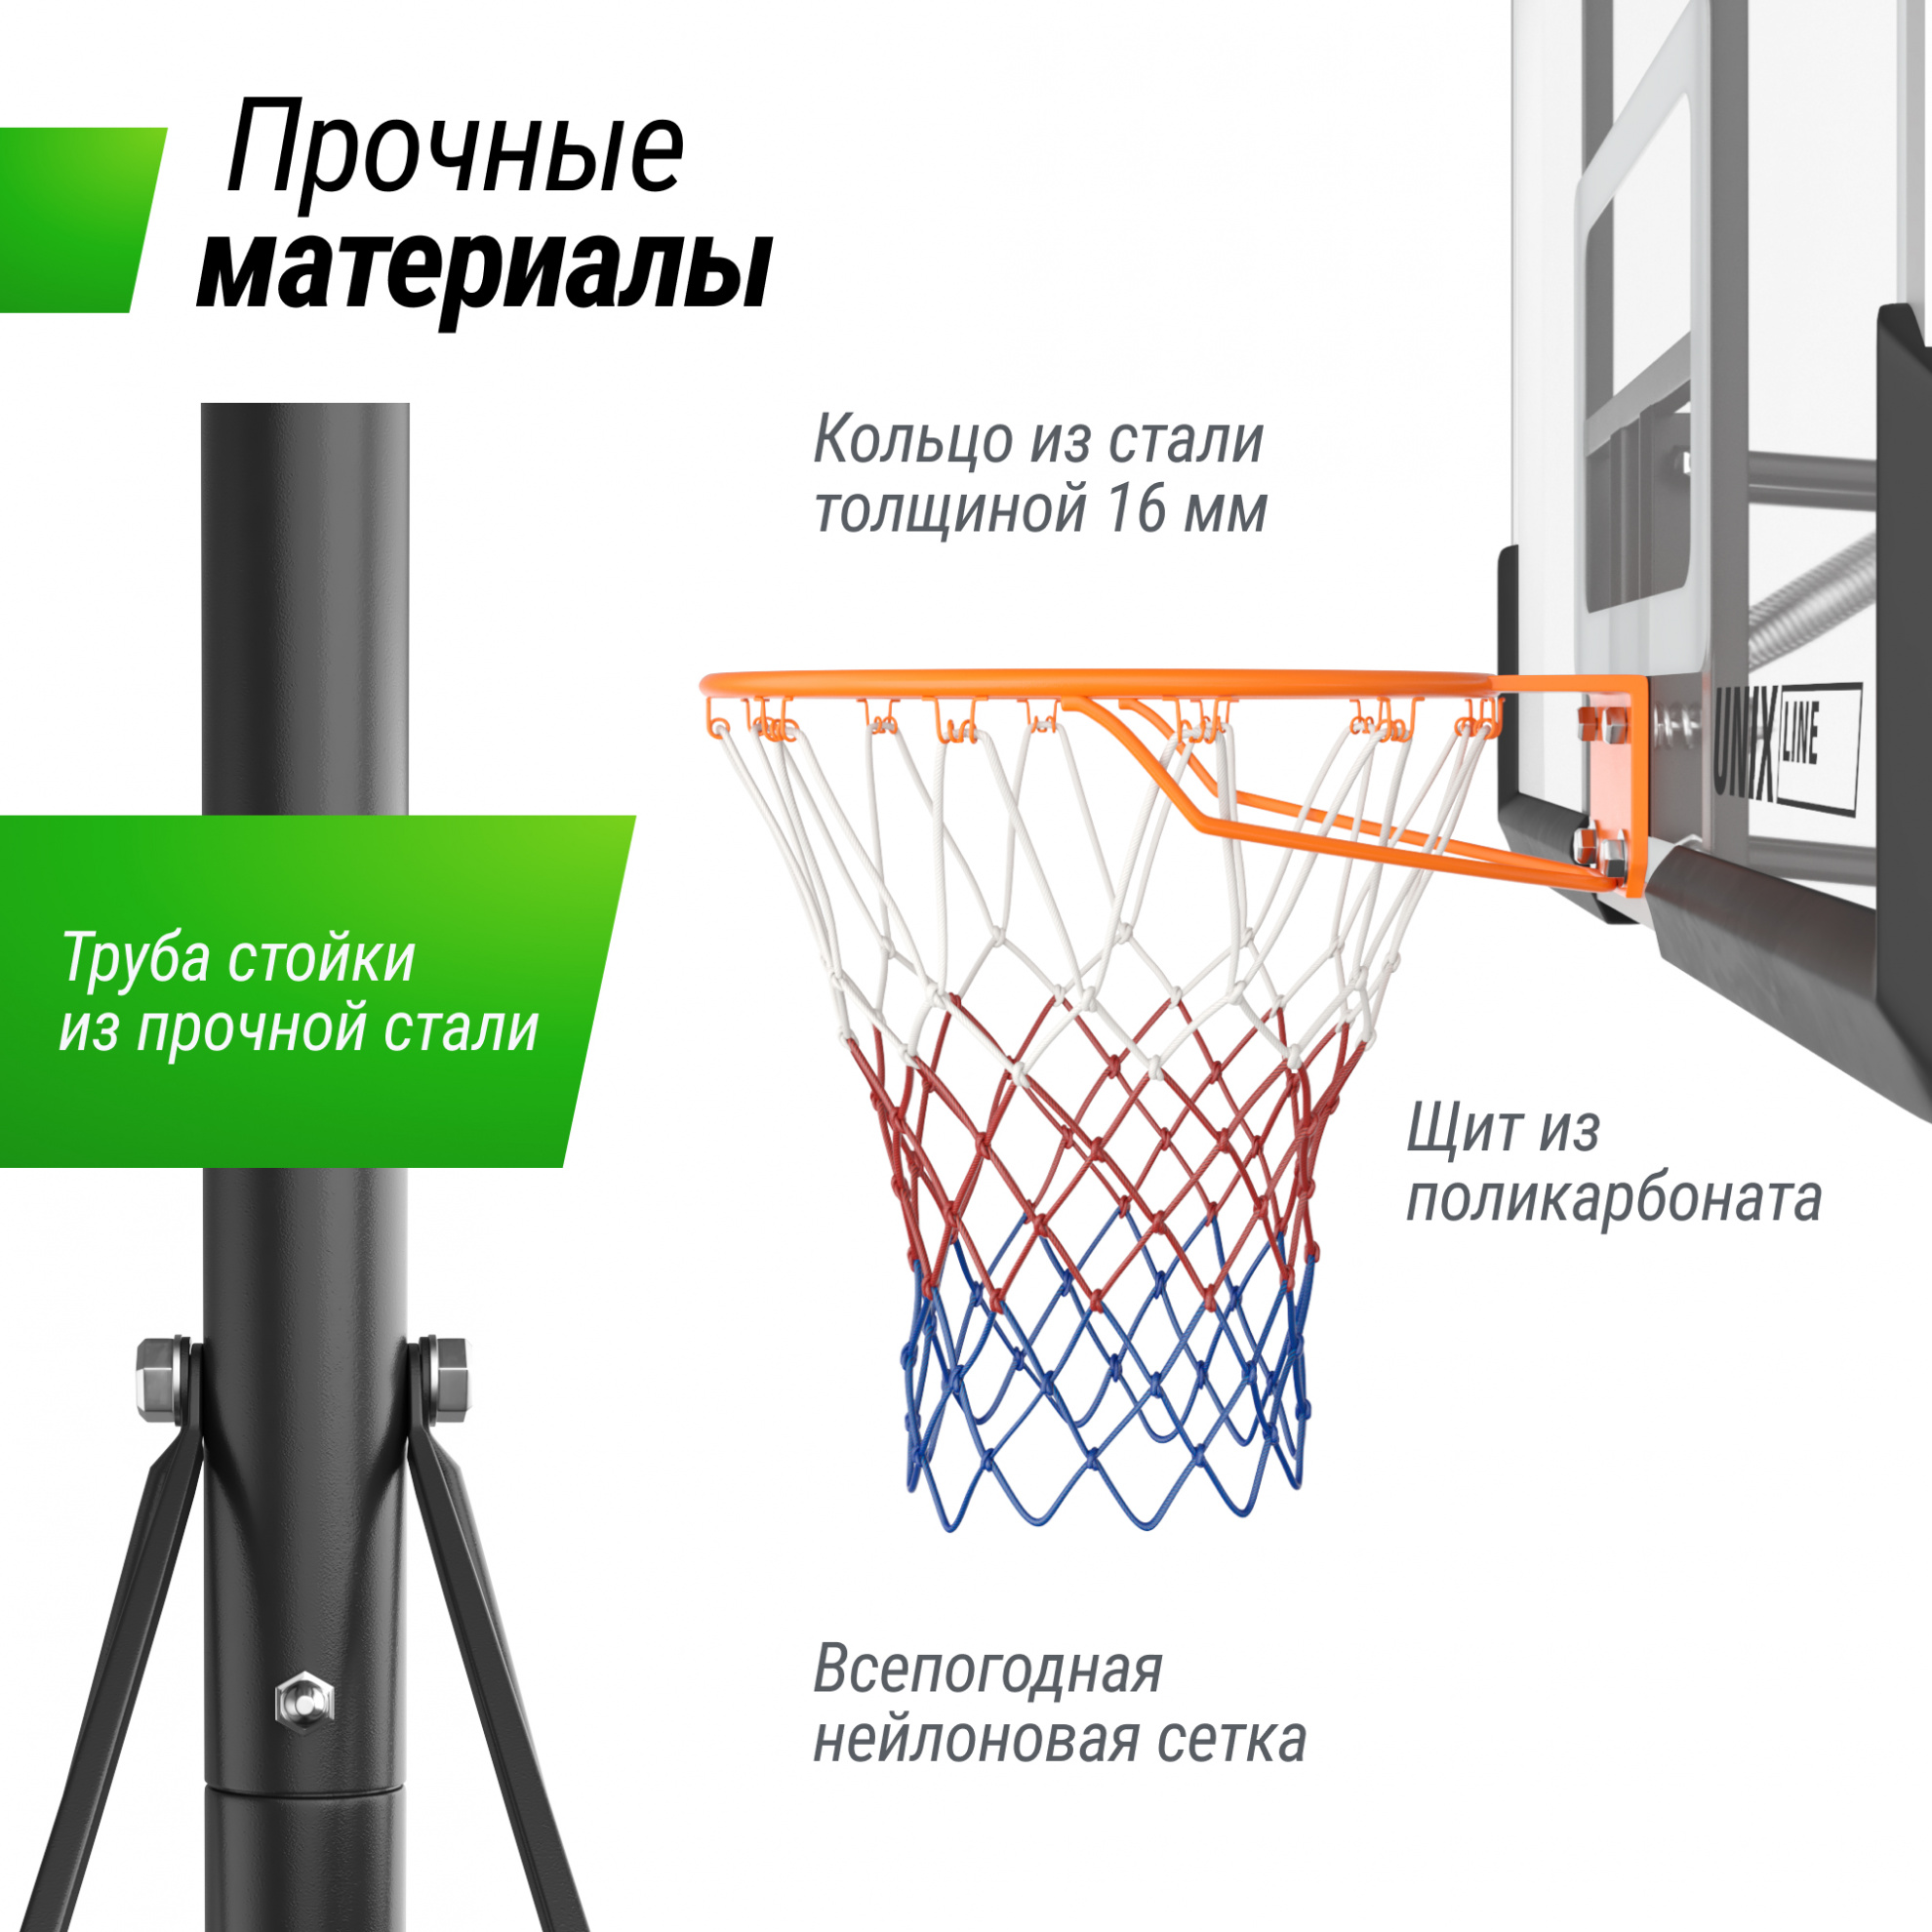 Мобильная баскетбольная стойка Unix Line B-Stand-PC 49x33’’ R45 H240-305 см